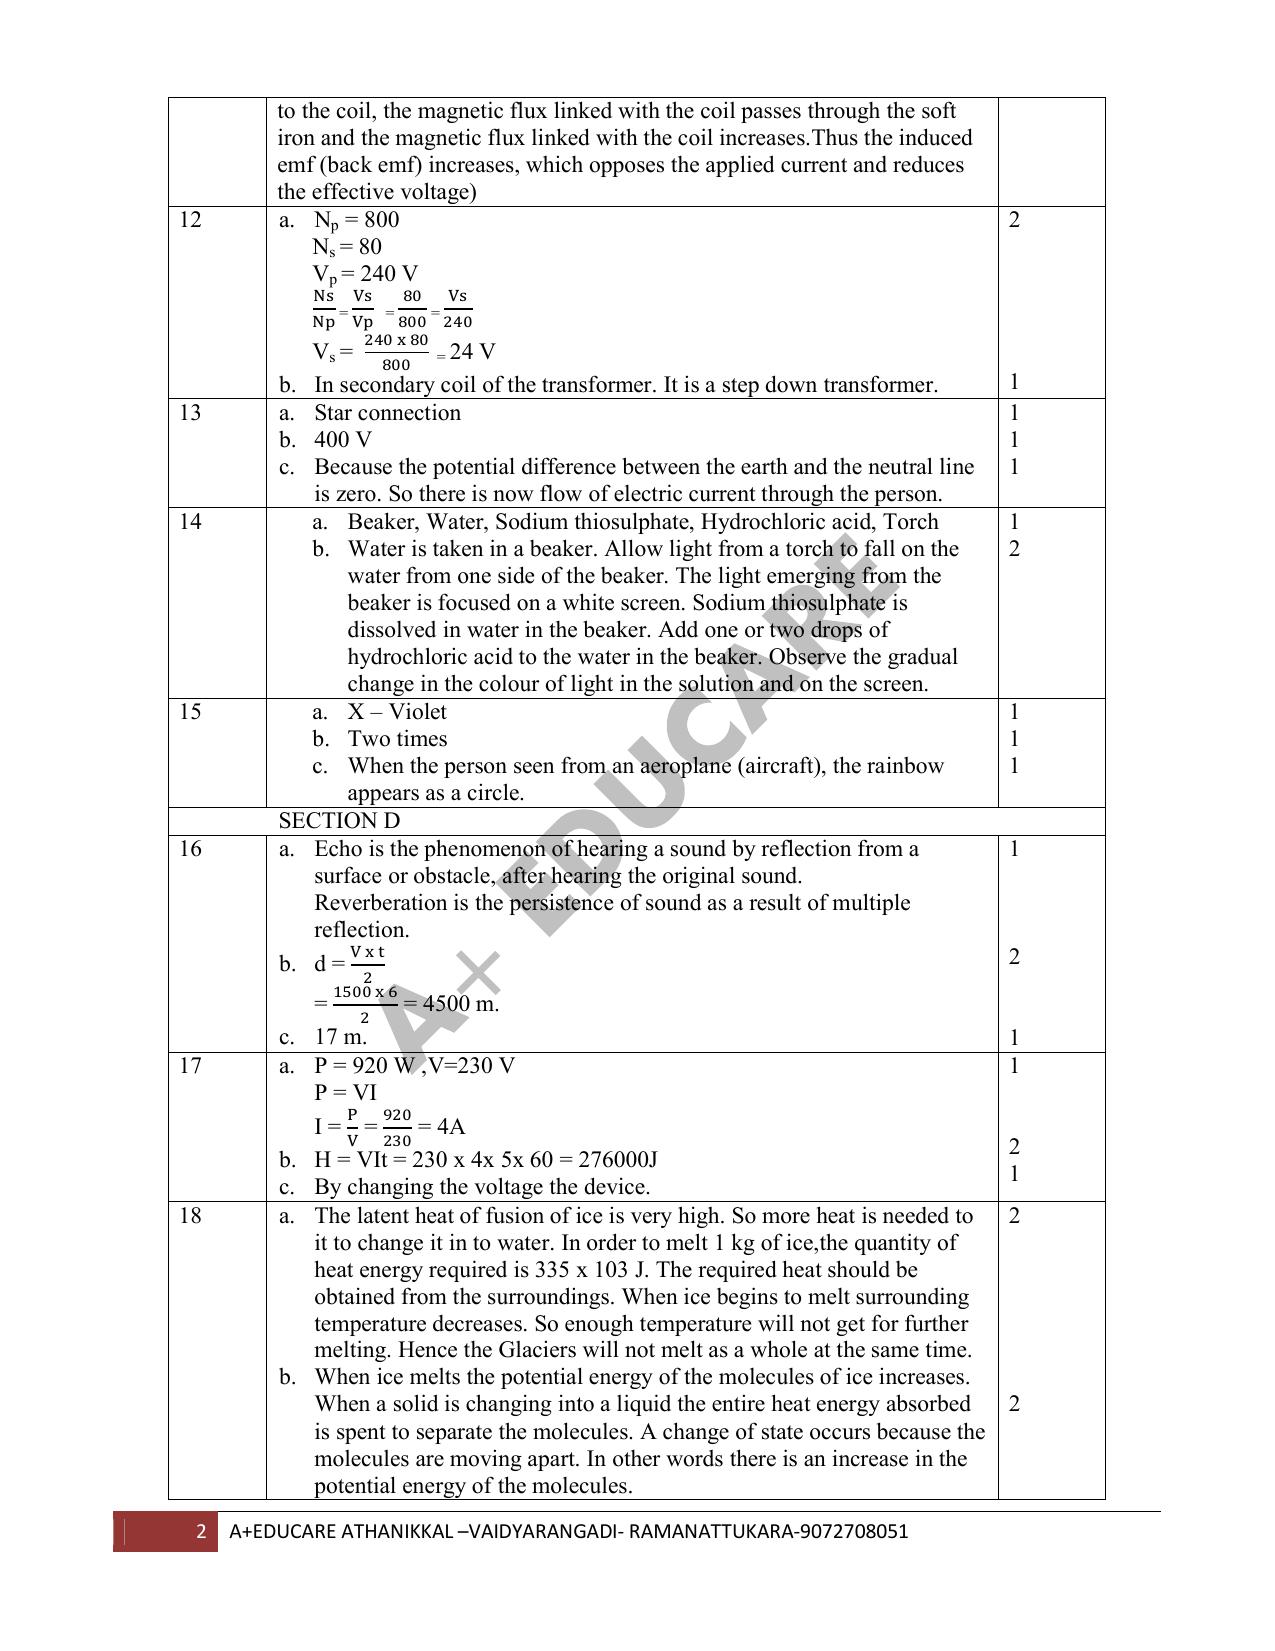 Kerala SSLC 2019 Physics Answer Key (EM) - Page 2